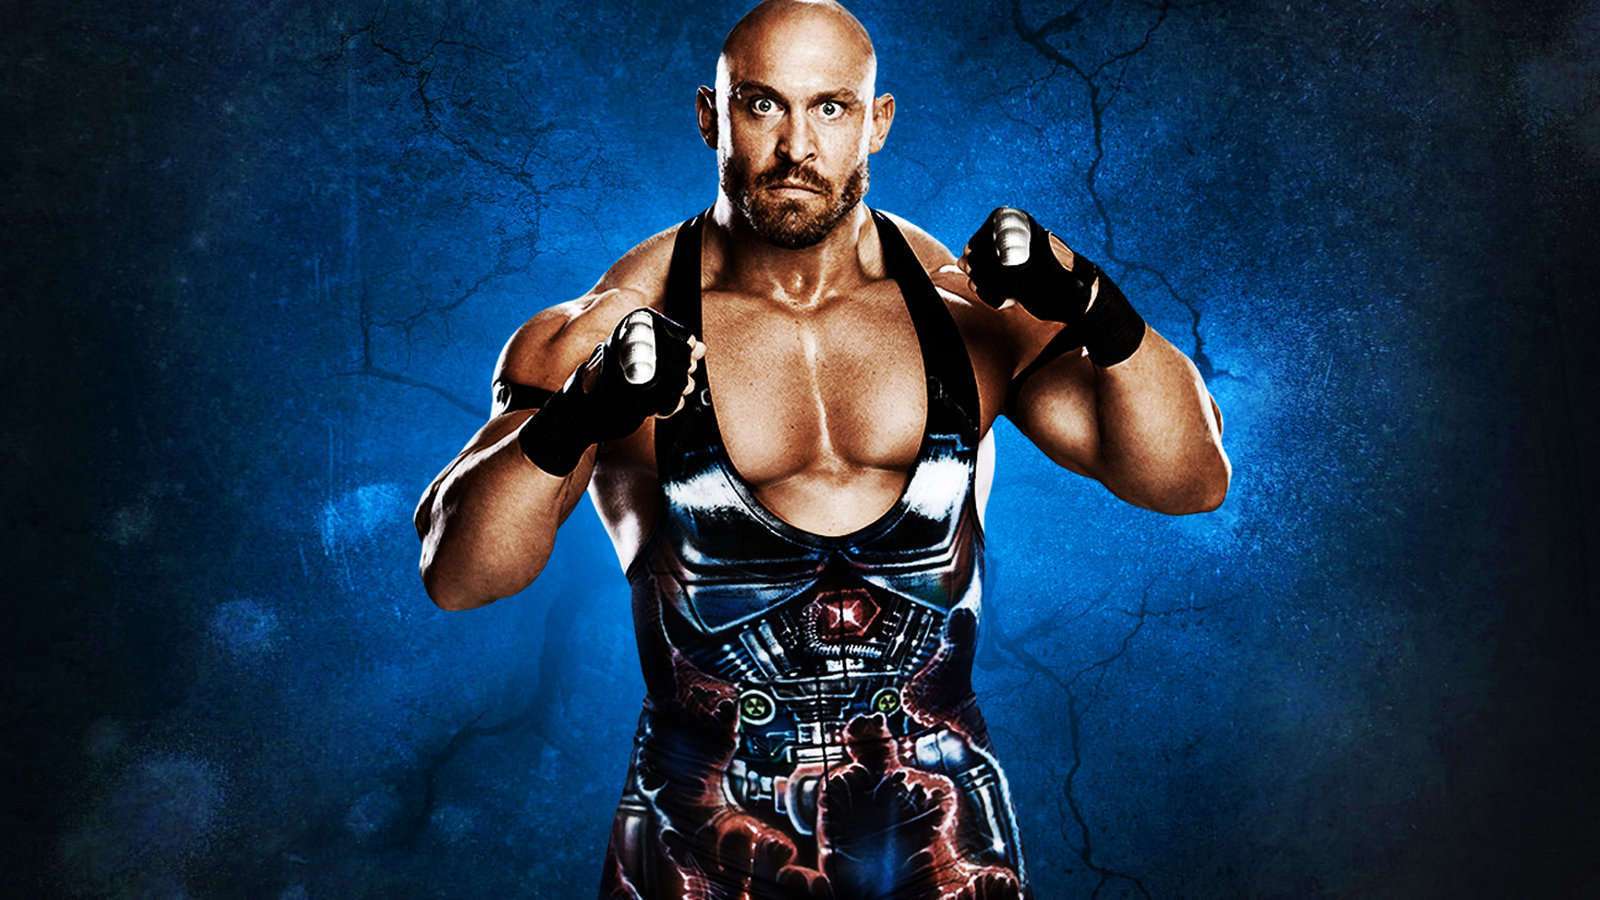 WWE Superstar "Ryback" HD Wallpaper